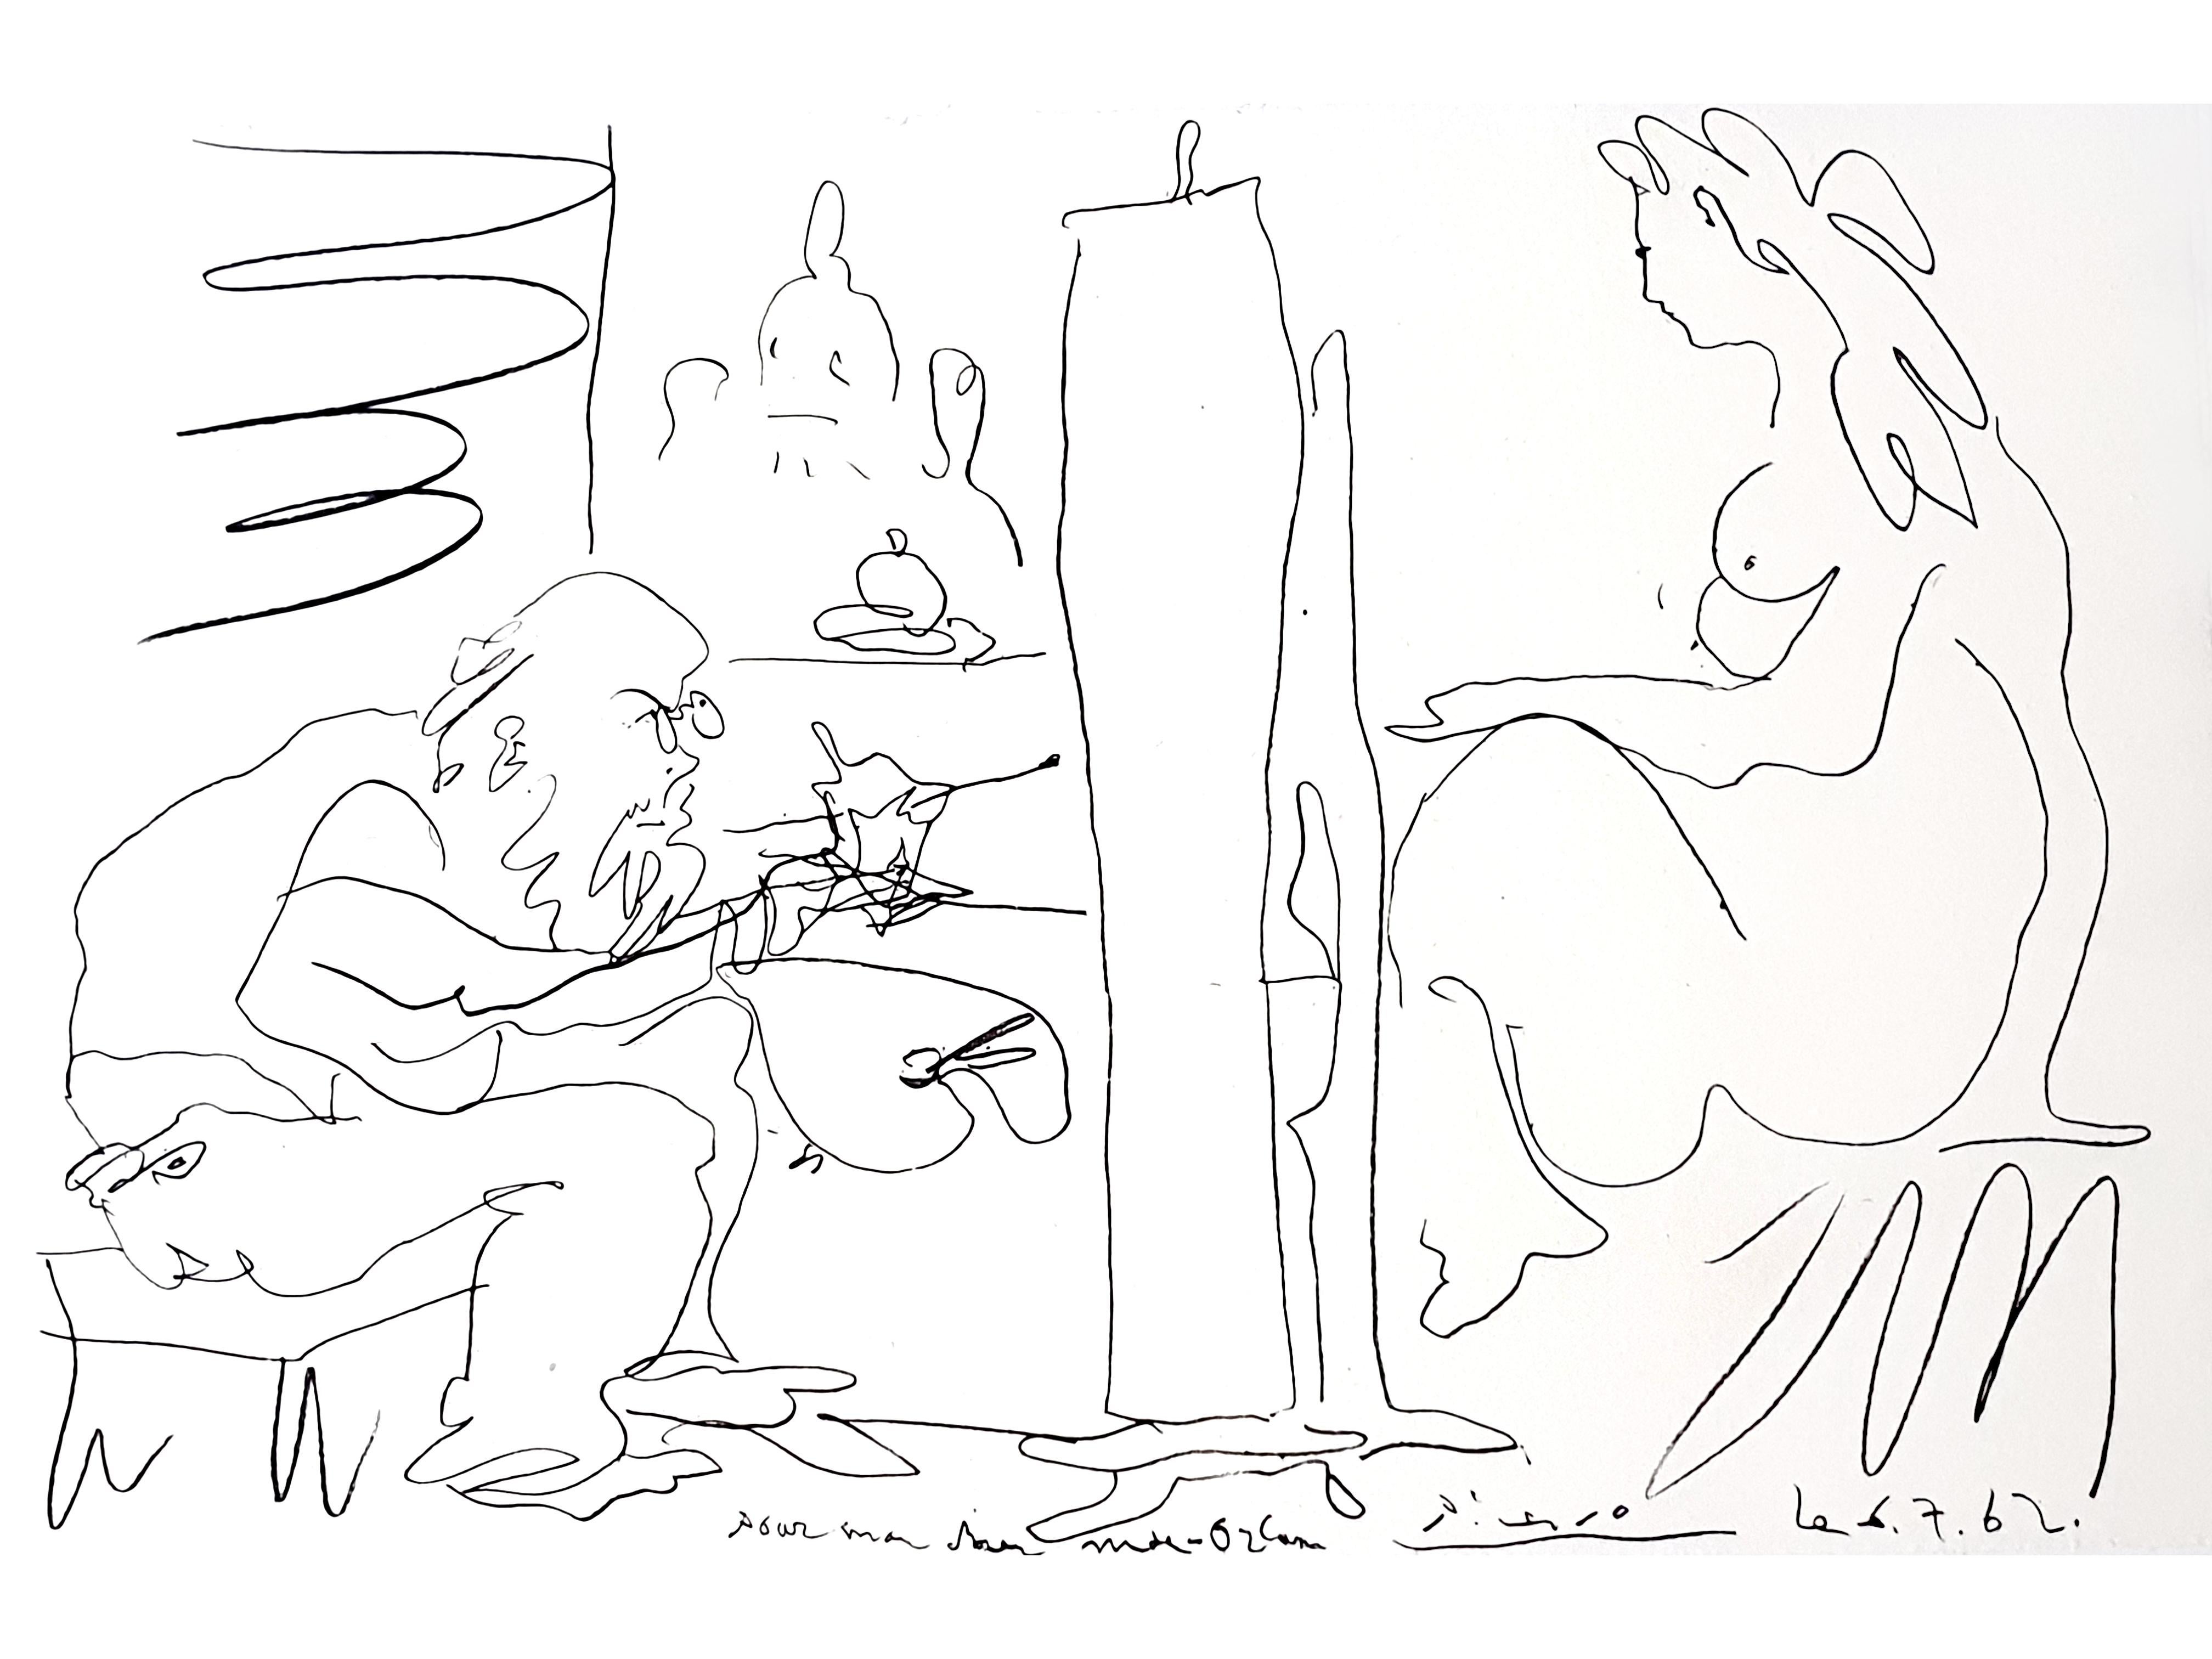 Original-Lithographie - Pablo Picasso
Titel: Der Maler und sein Modell
Dieses Dokument ist unsigniert und nicht nummeriert, wie ausgestellt
Aus dem Buch/Portfolio "Regards sur Paris" 
Veröffentlicht von André Sauret, Paris, 1963.
Das Buch, aus dem